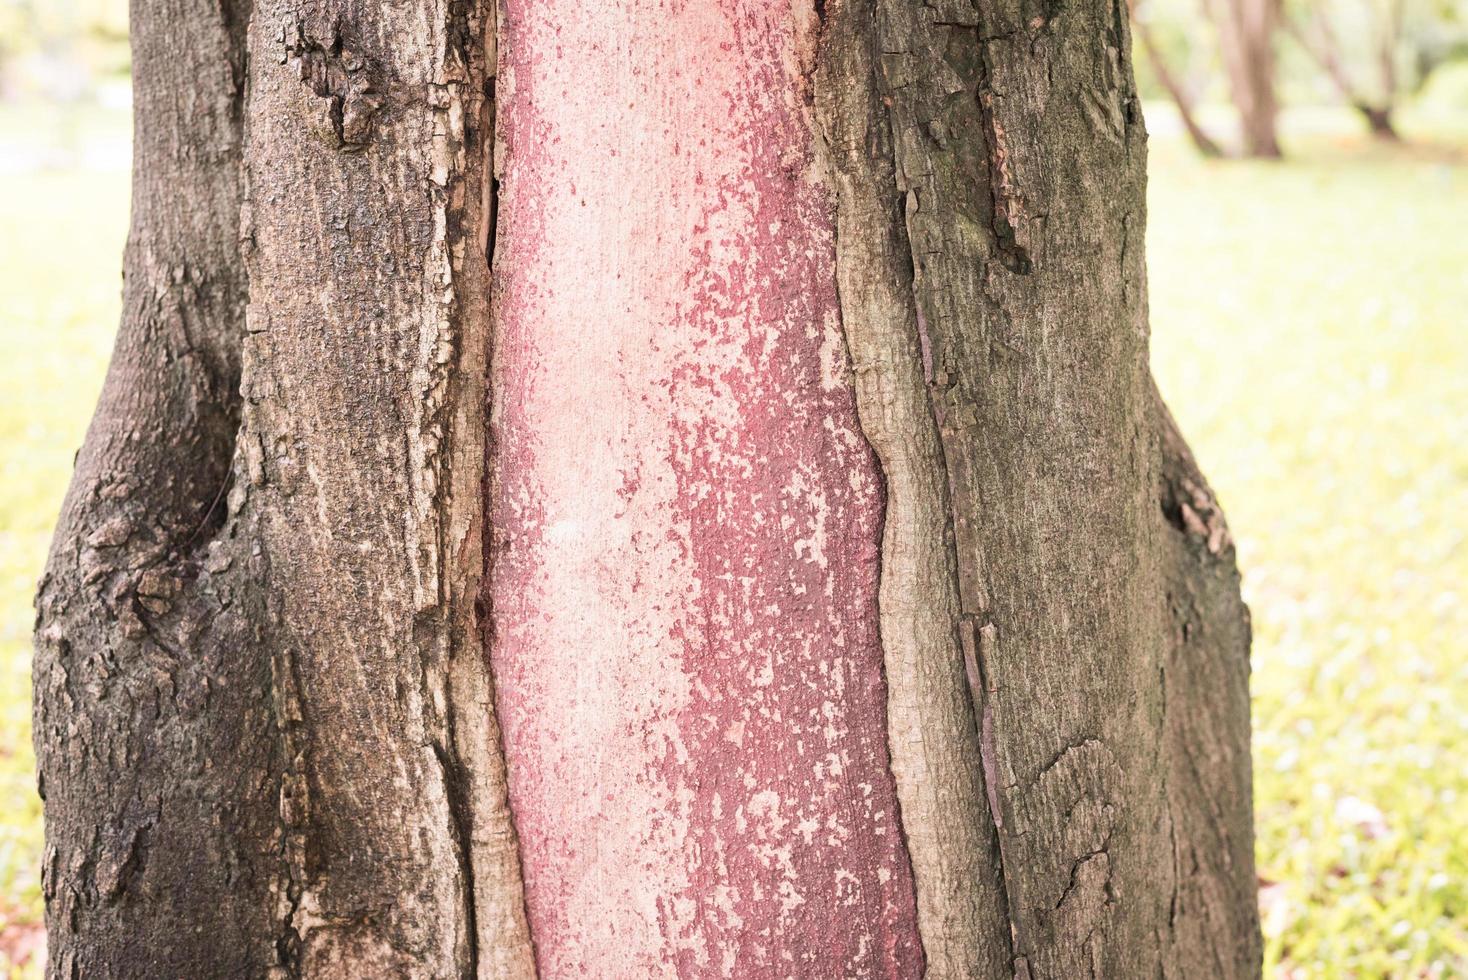 el tronco del árbol del que se quita la corteza la madera es de color rojo claro.el tronco del árbol del que se quita la corteza es de color rojo claro foto